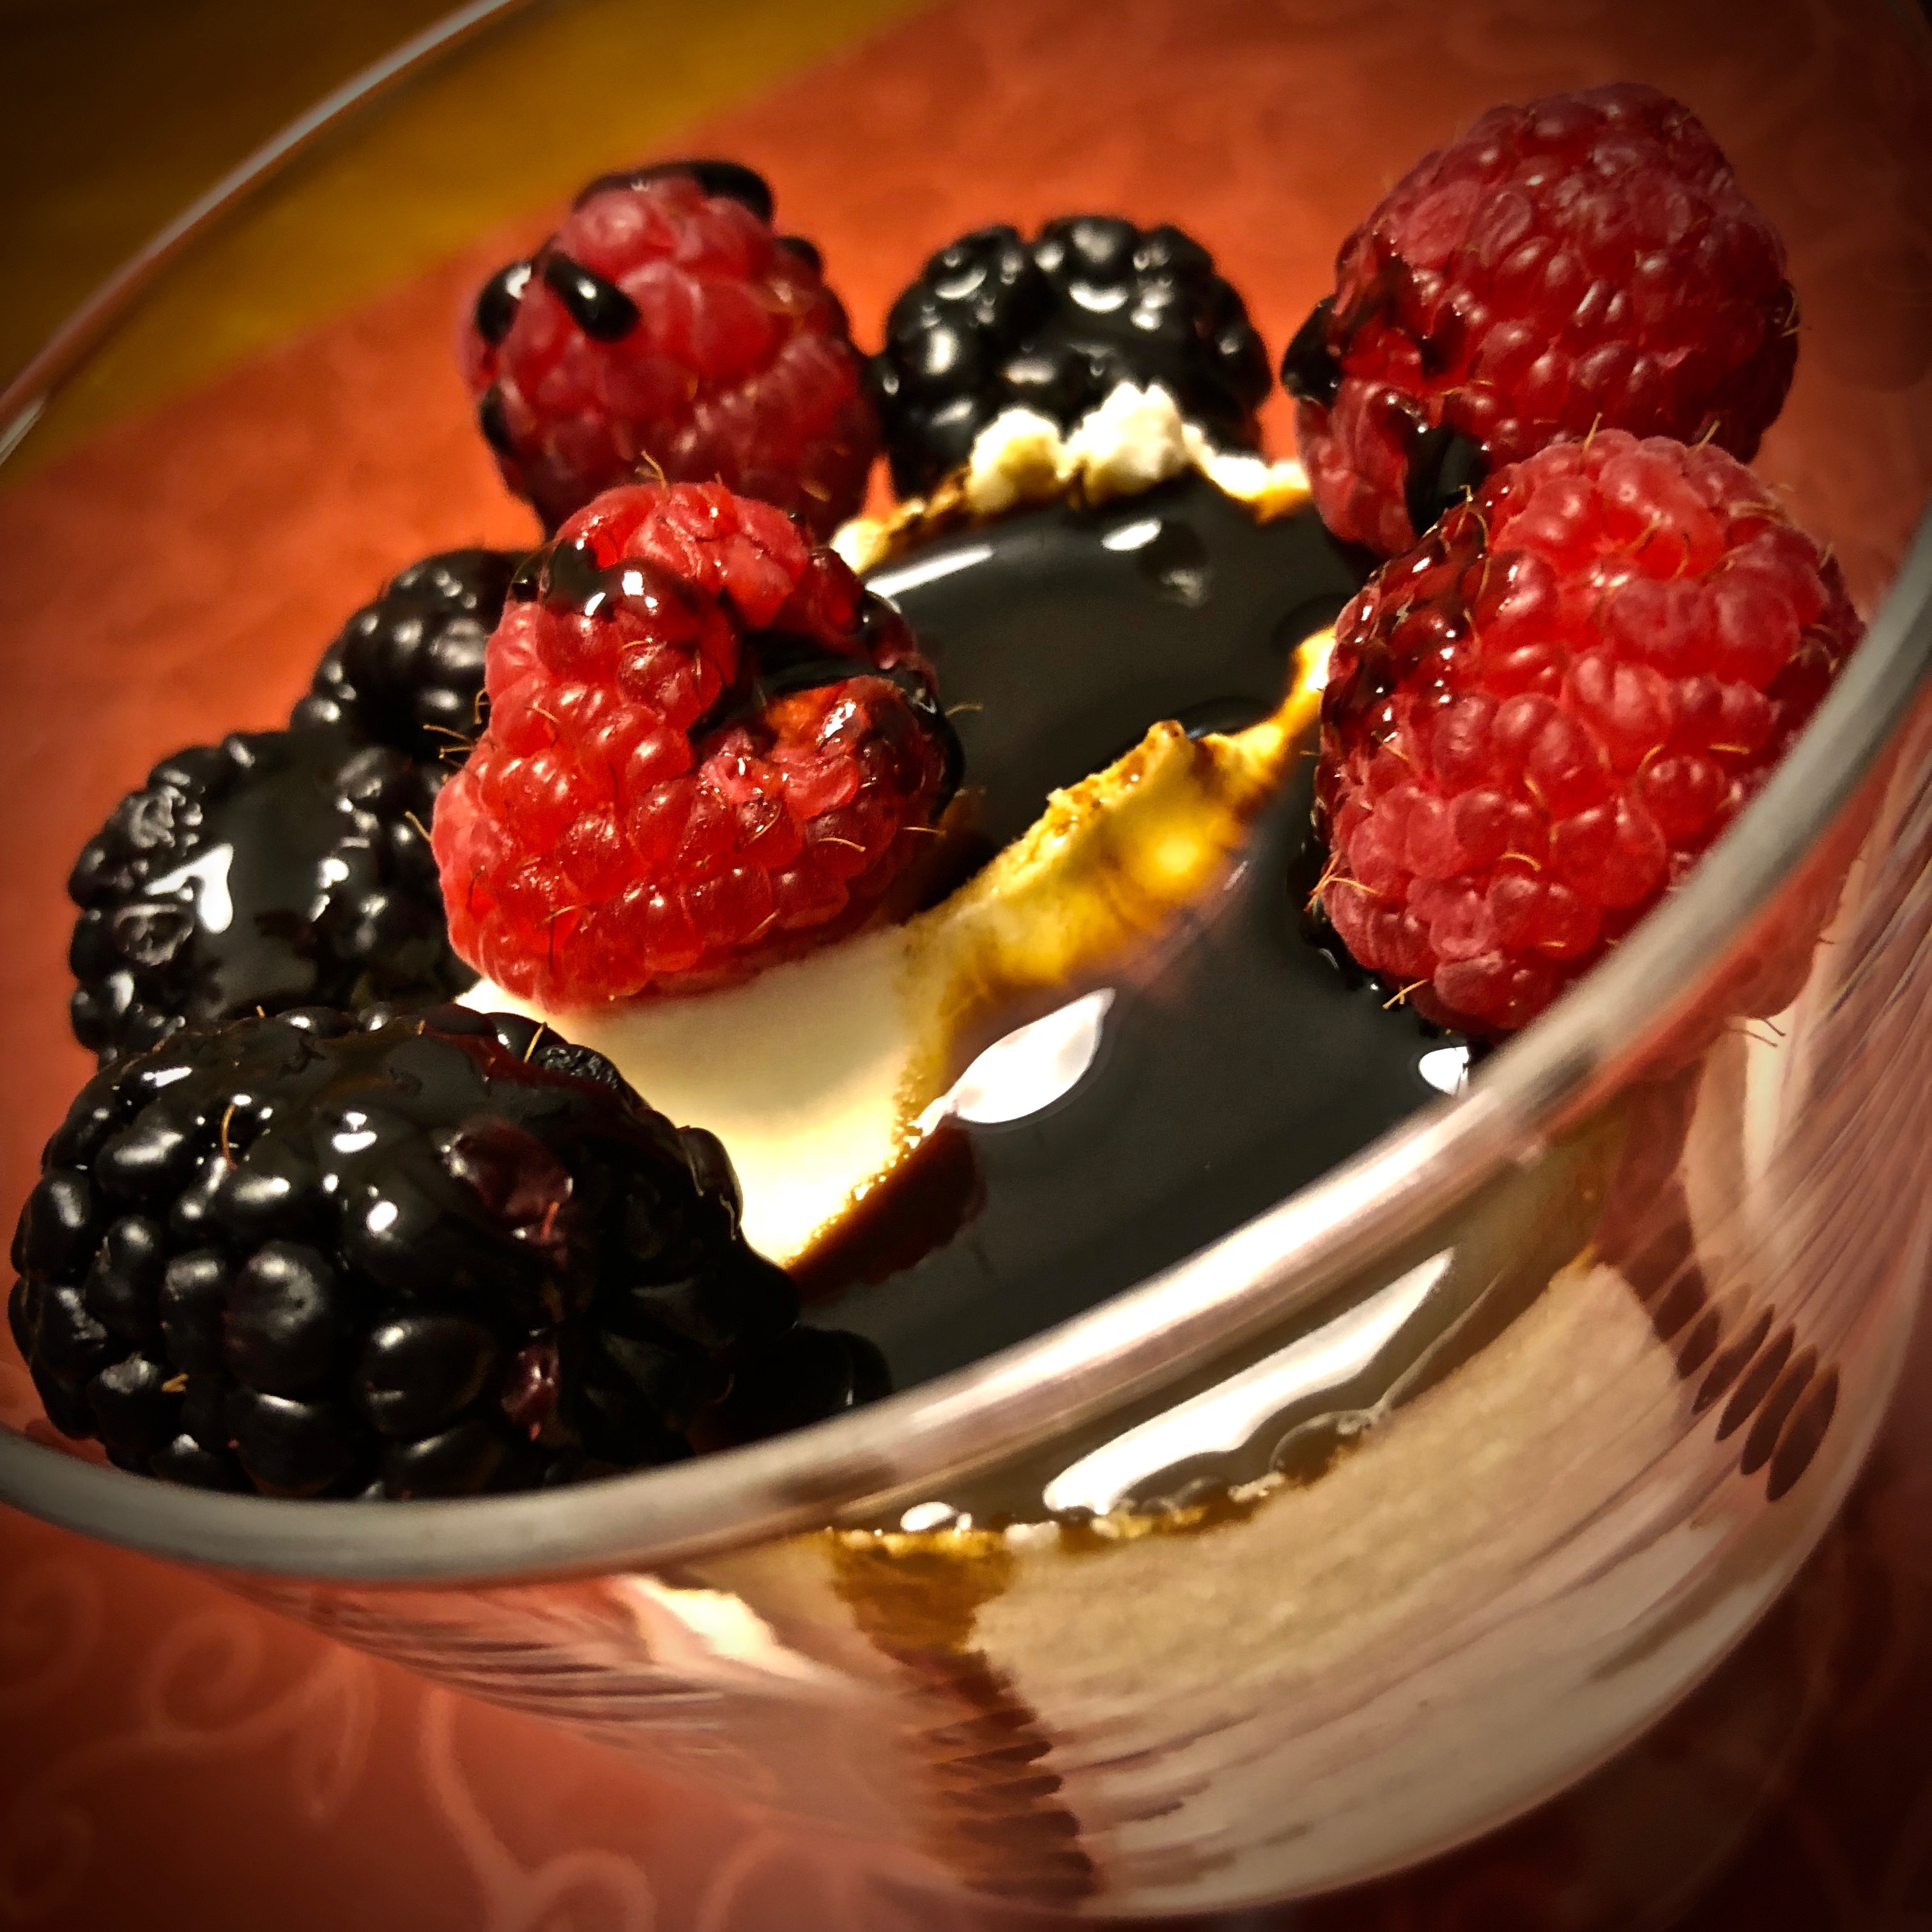 vanilla ice cream with balsamic and berries.jpg